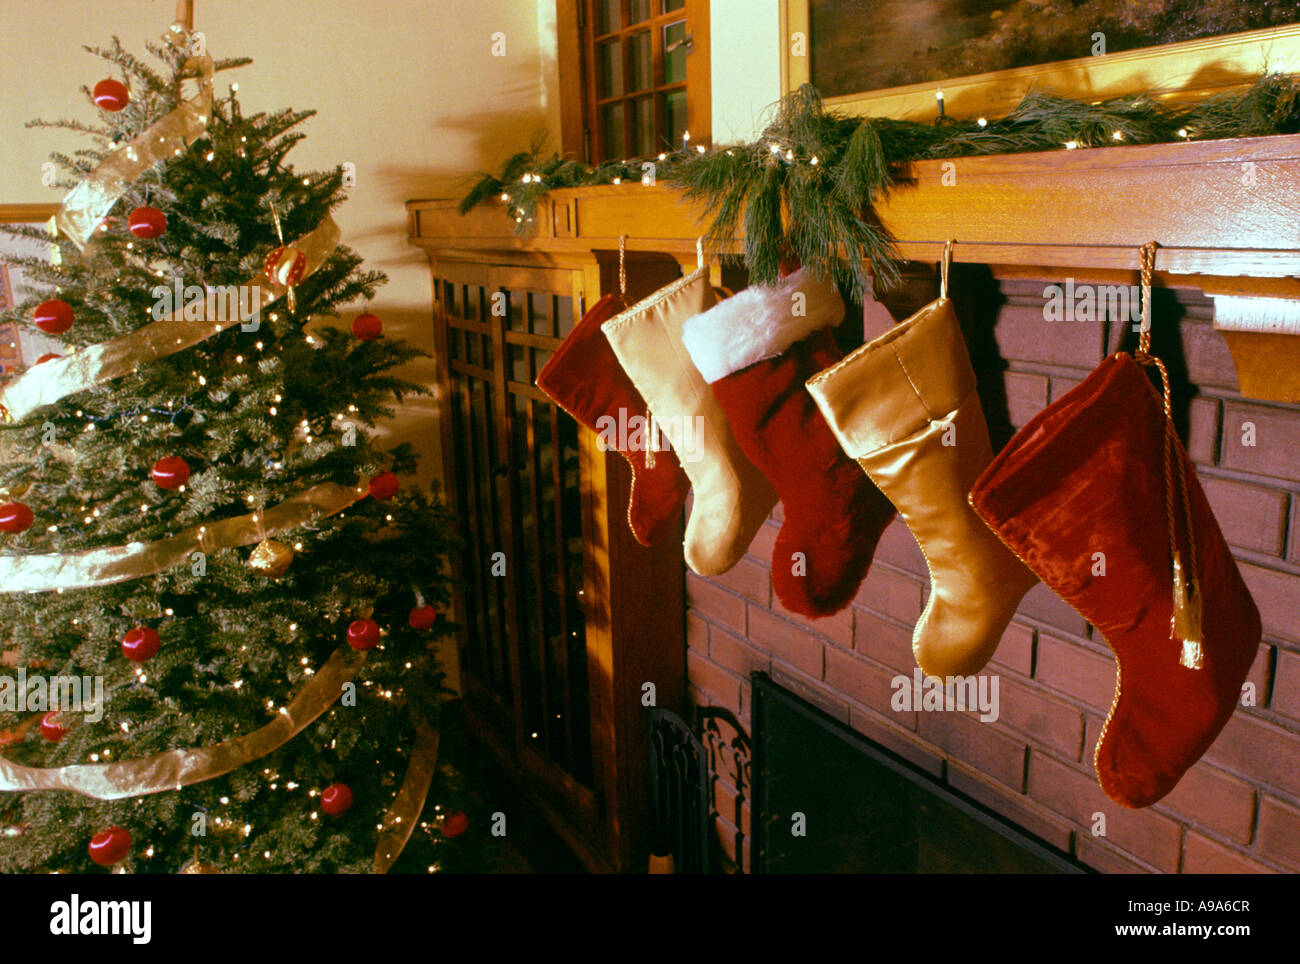 Immagini Natale Usa.La Linea Di Calze Appeso Sopra Il Camino In Camera Natale Usa Foto Immagine Stock 12301558 Alamy